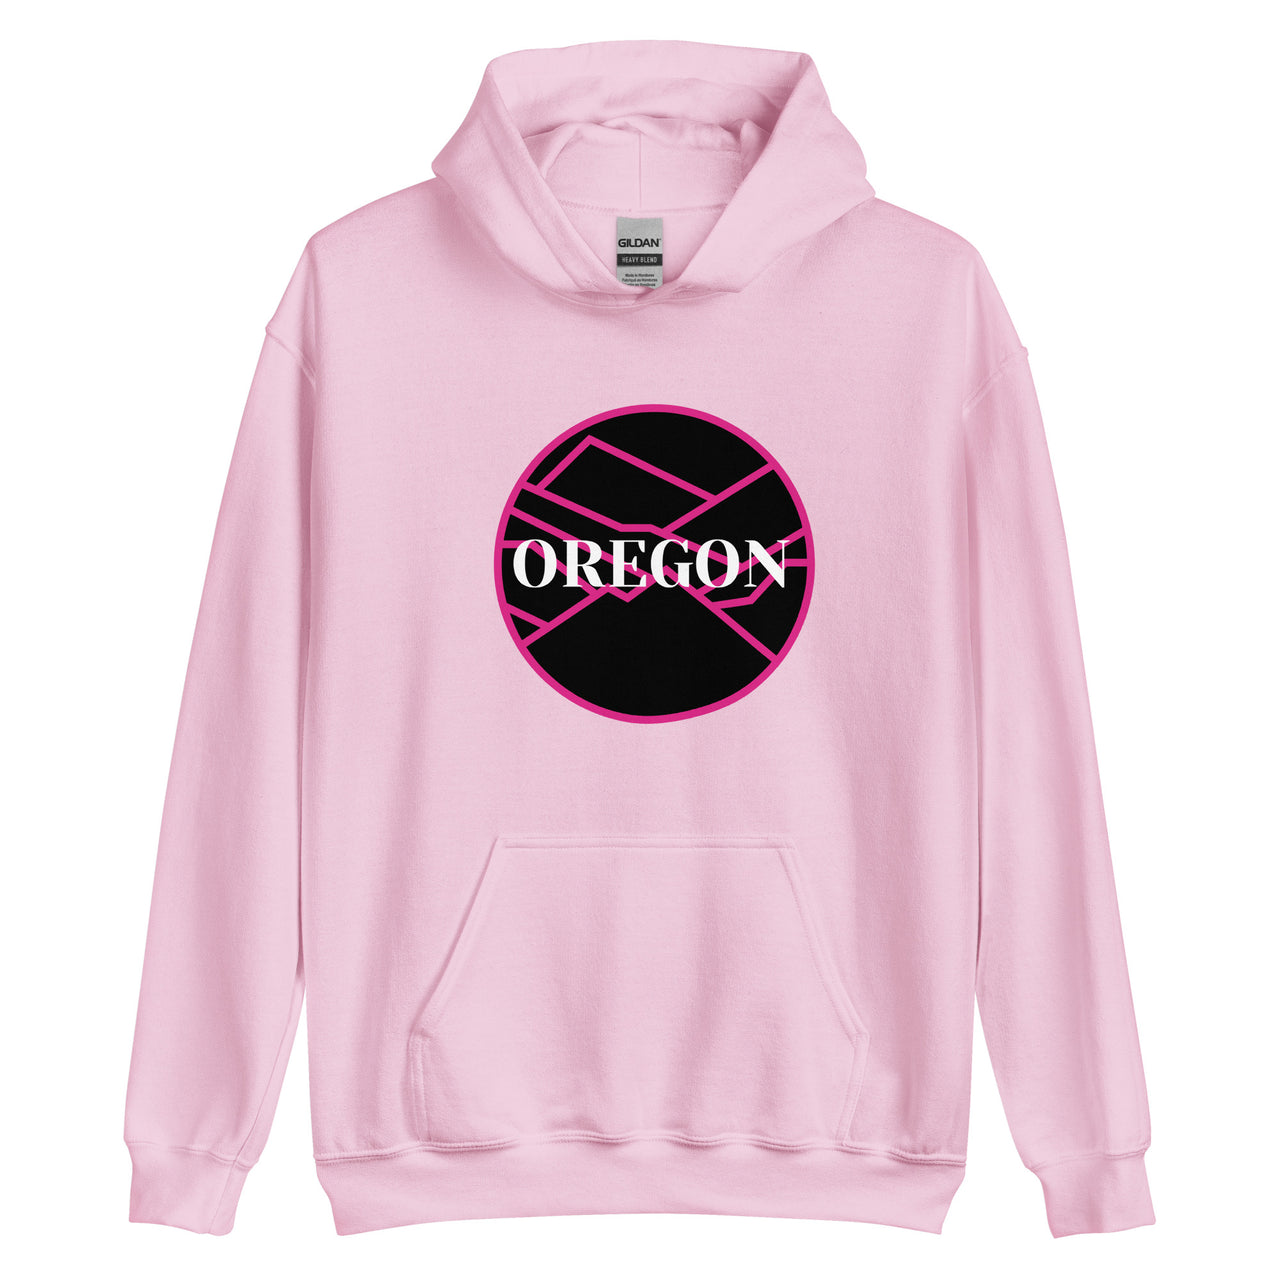 OREGON - Pink/Black - Unisex Hoodie